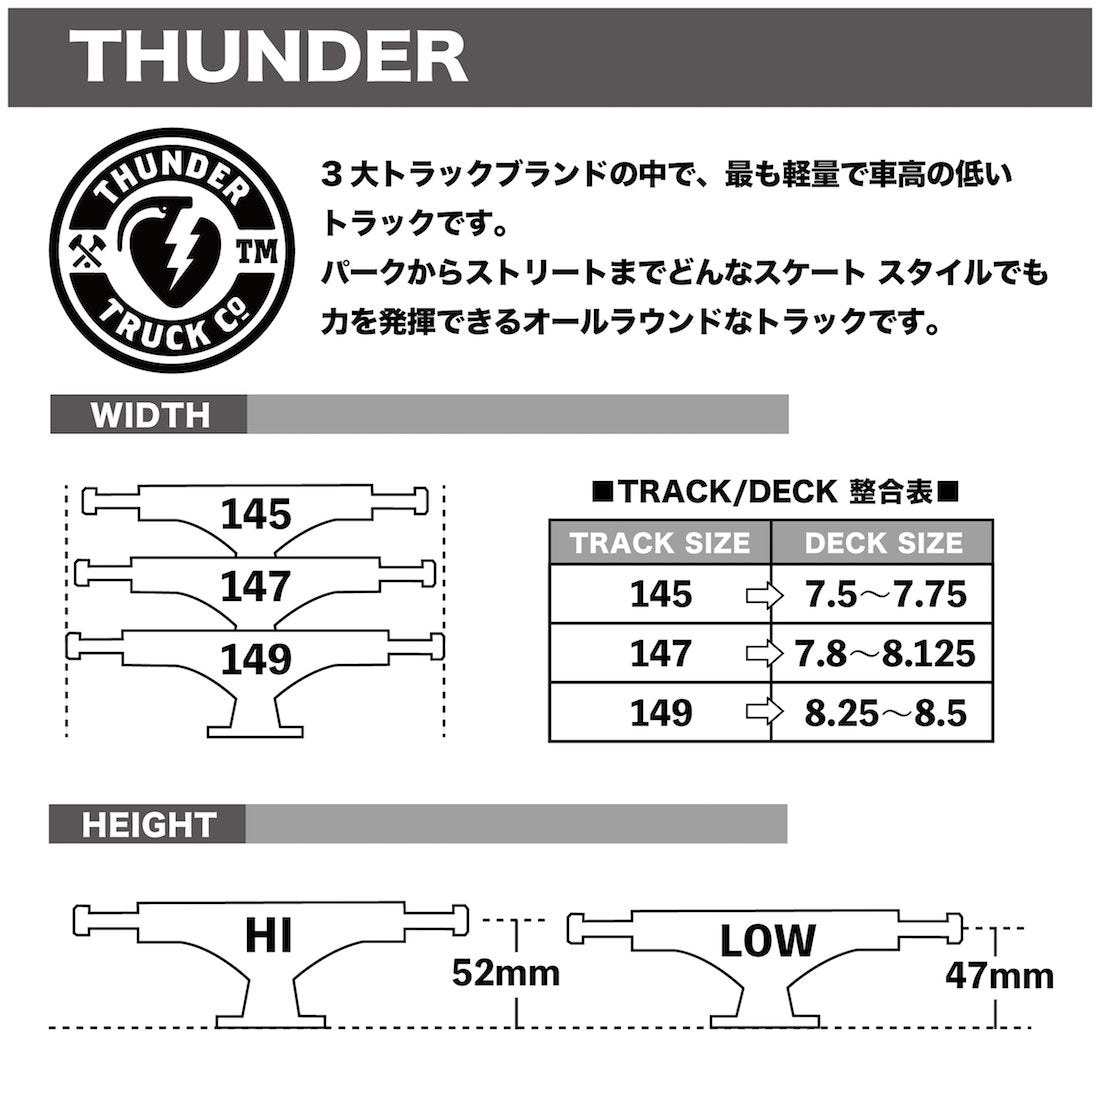 【THUNDER】Strikes -145 HI